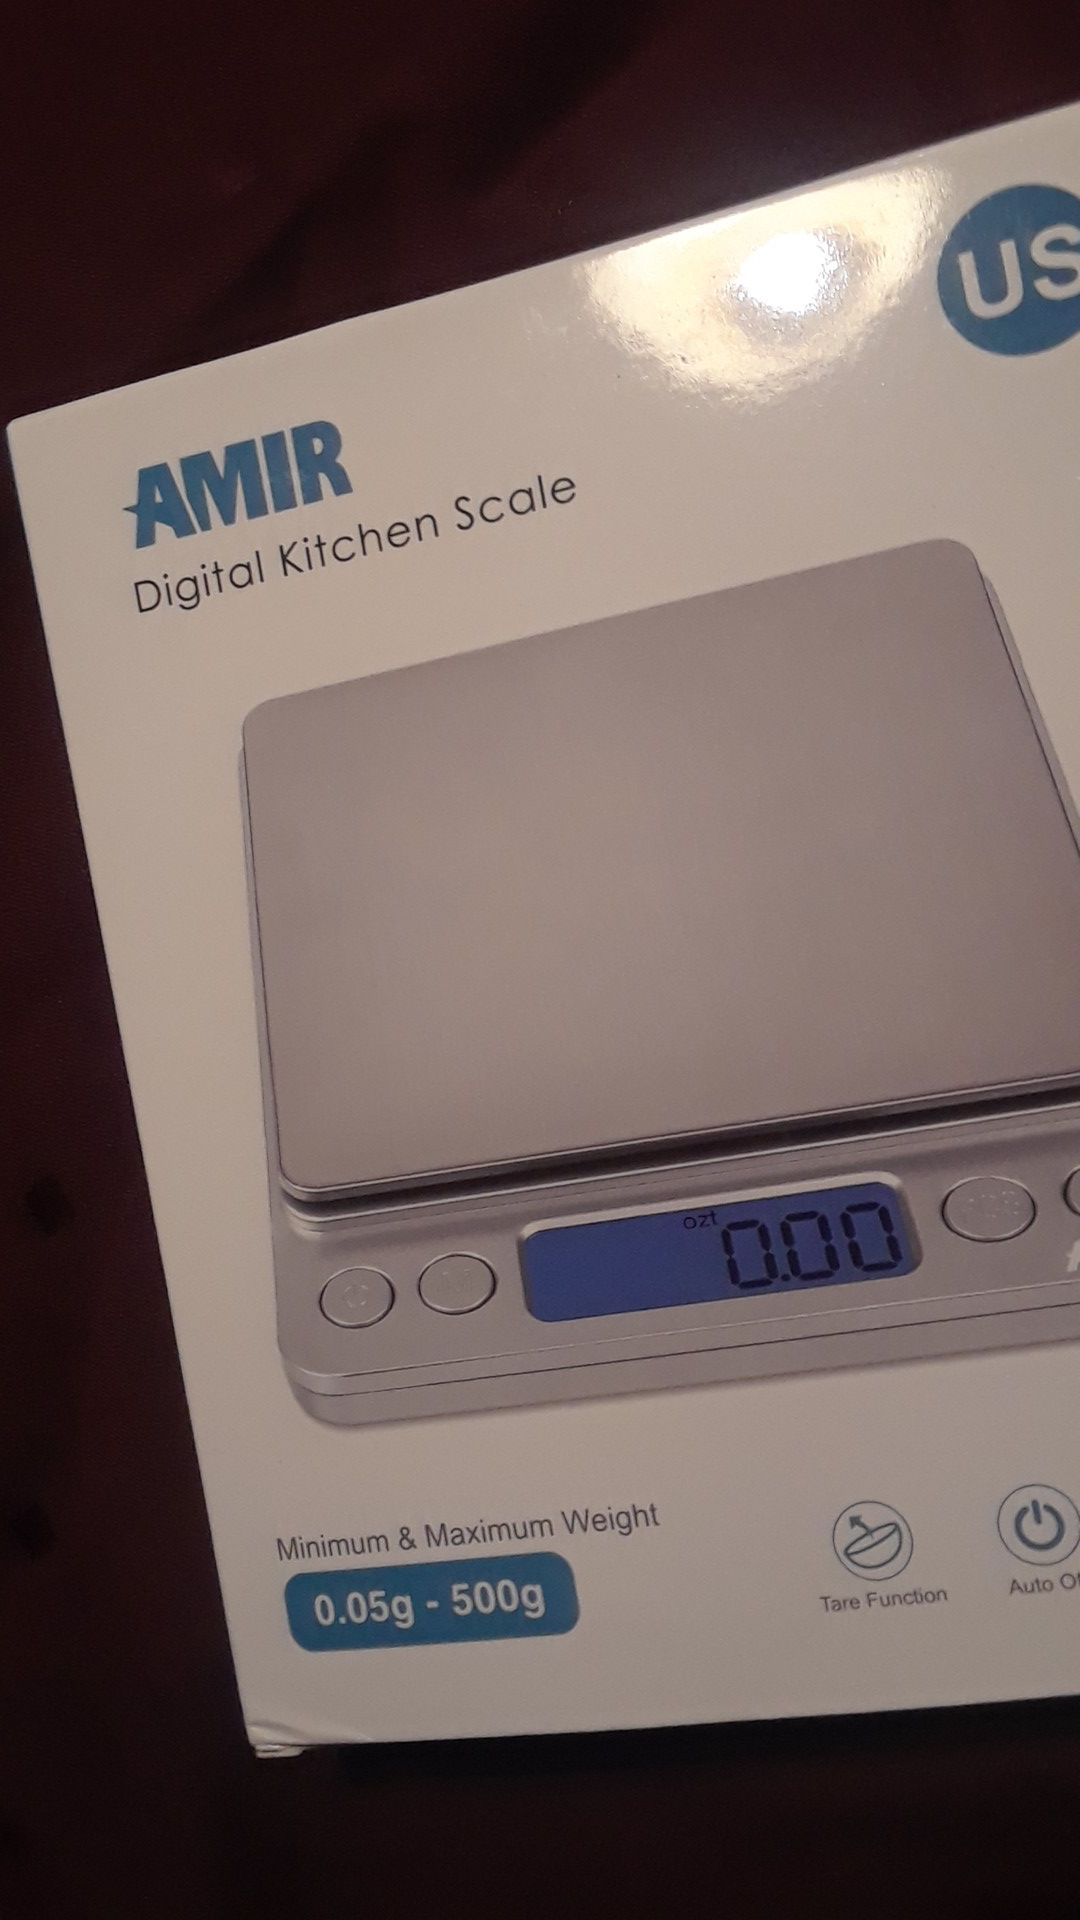 NEW! AMIR Digital Kitchen Scale, Min.05g to 500g